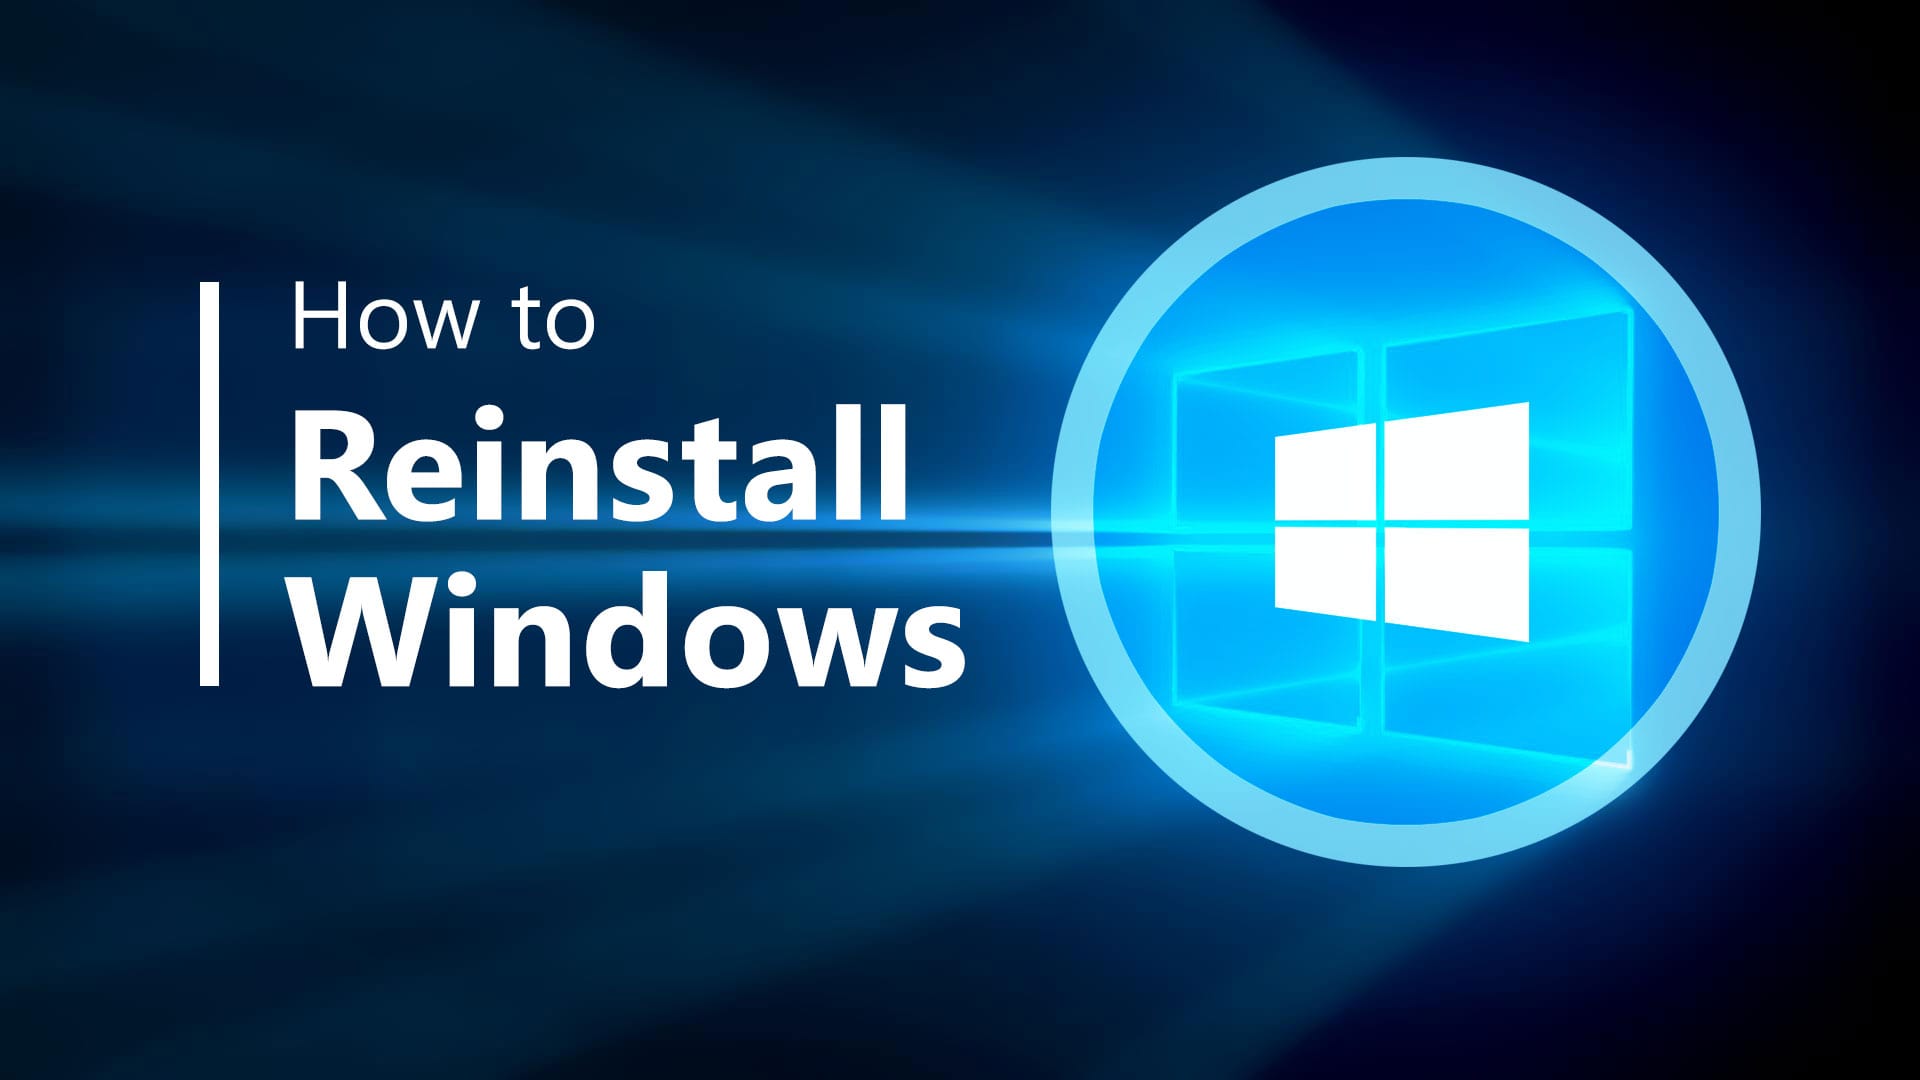 Installieren Sie Windows 10 neu. Schritt-für-Schritt-Anleitung.